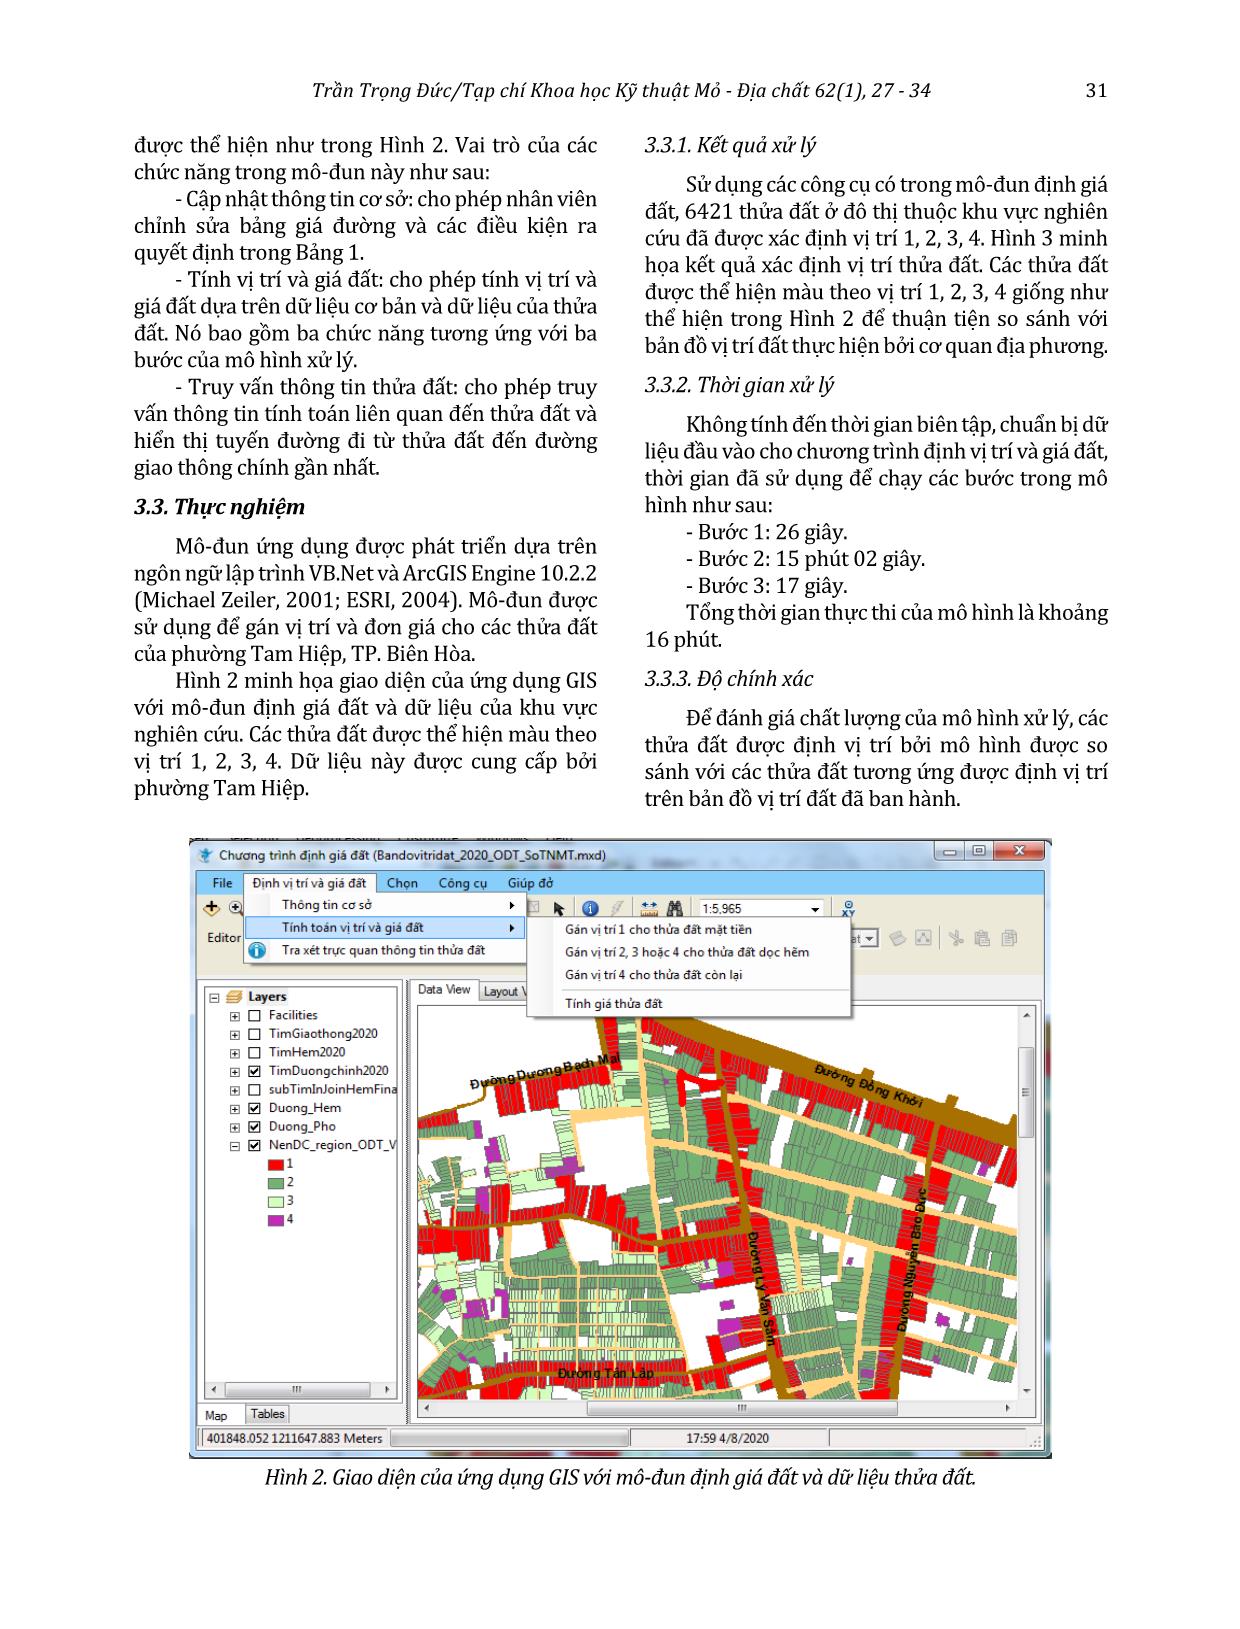 Định vị trí và giá cho từng thửa đất sử dụng ArcGIS Engine trang 5